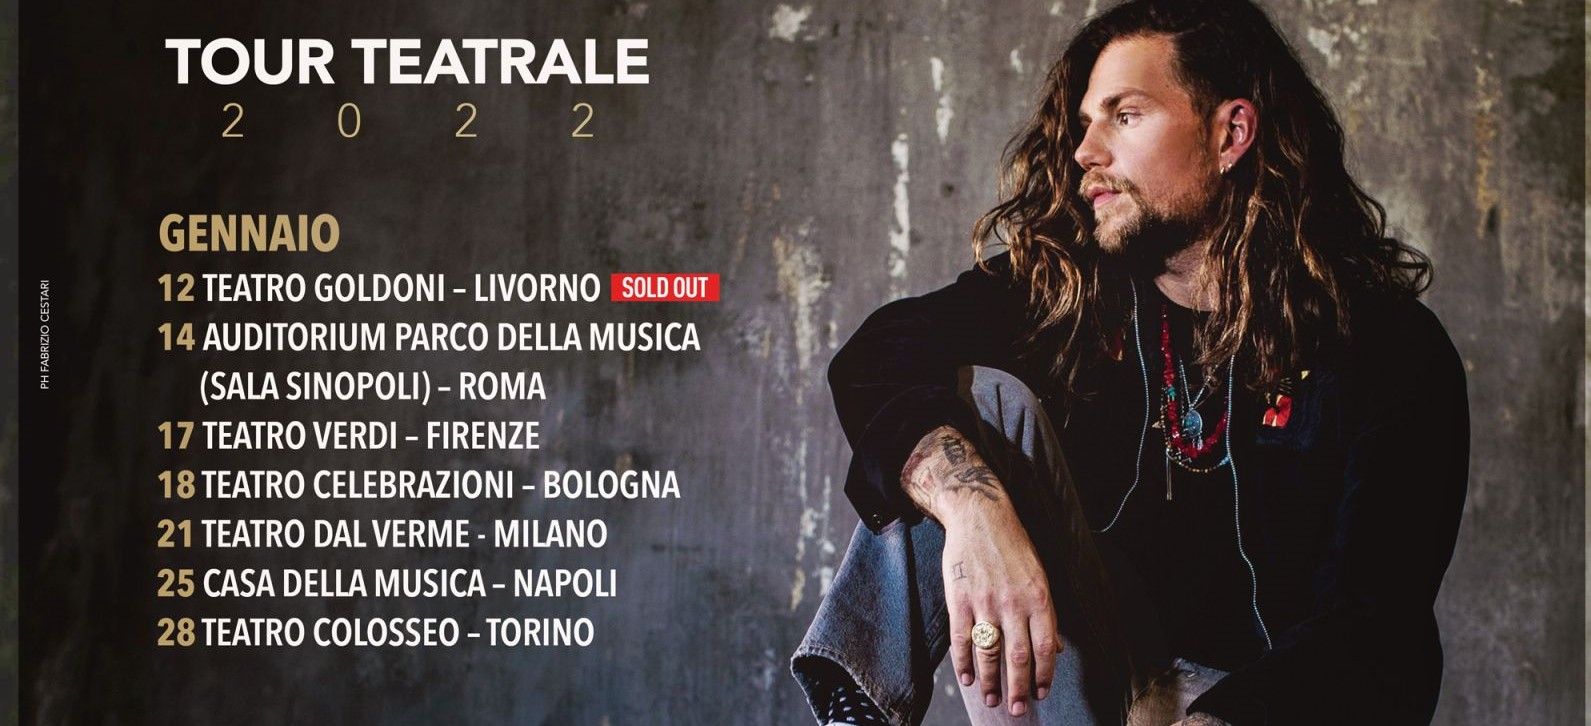 Enrico Nigiotti in tour da gennaio, il calendario di tutte le date